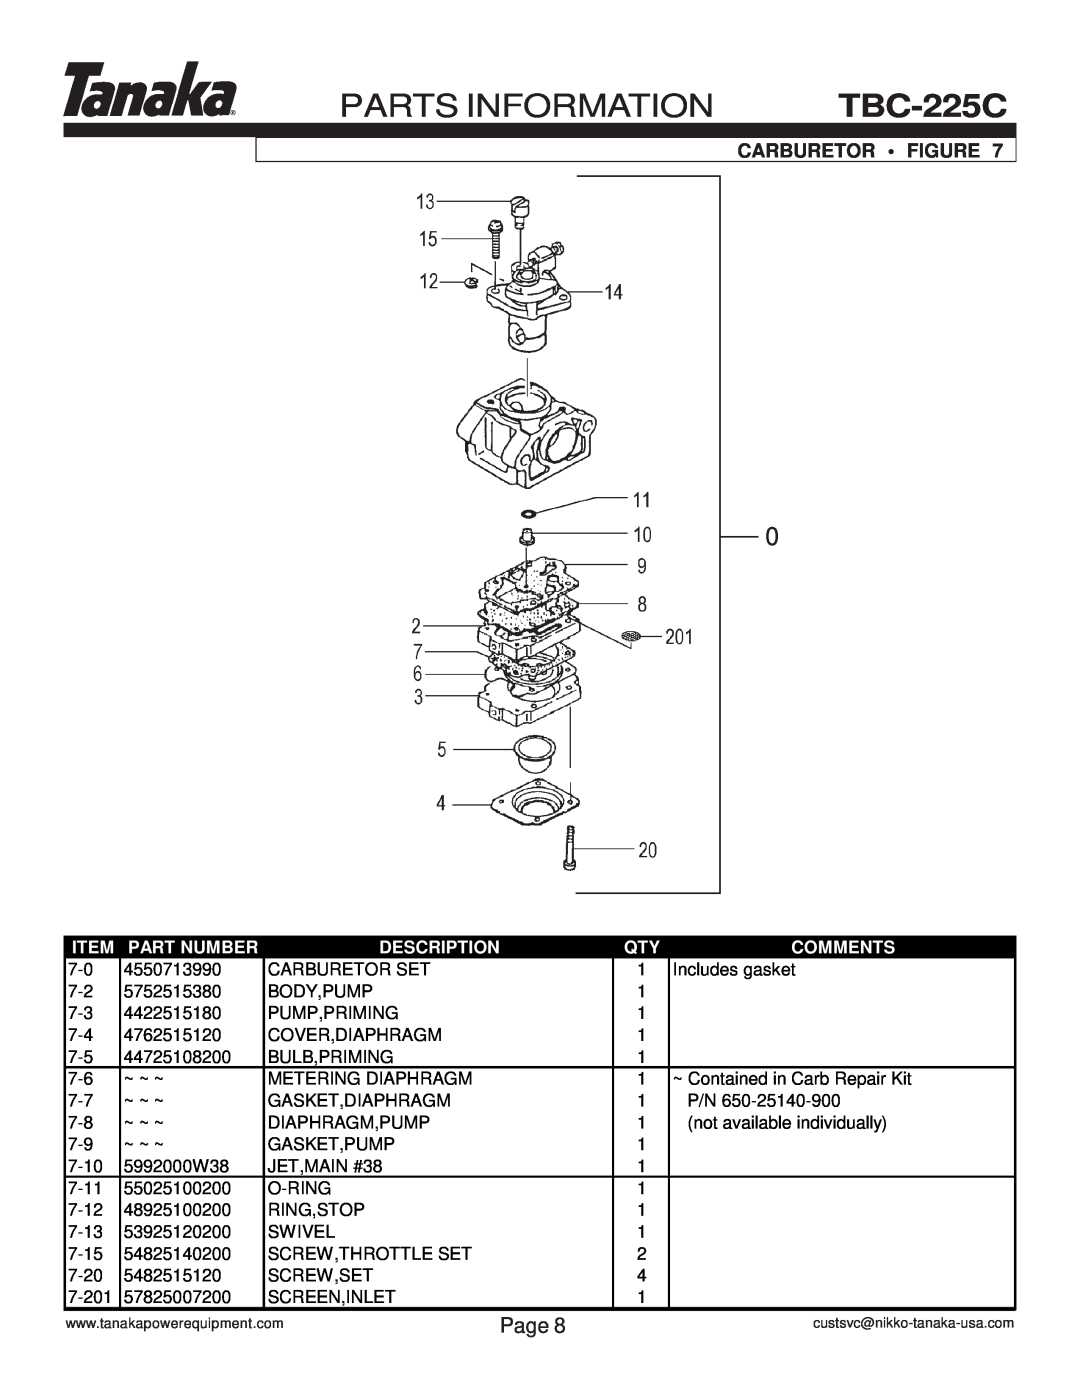 Tanaka TBC-225C manual Parts Information, Carburetor Figure, Page, Part Number, Description, Comments 